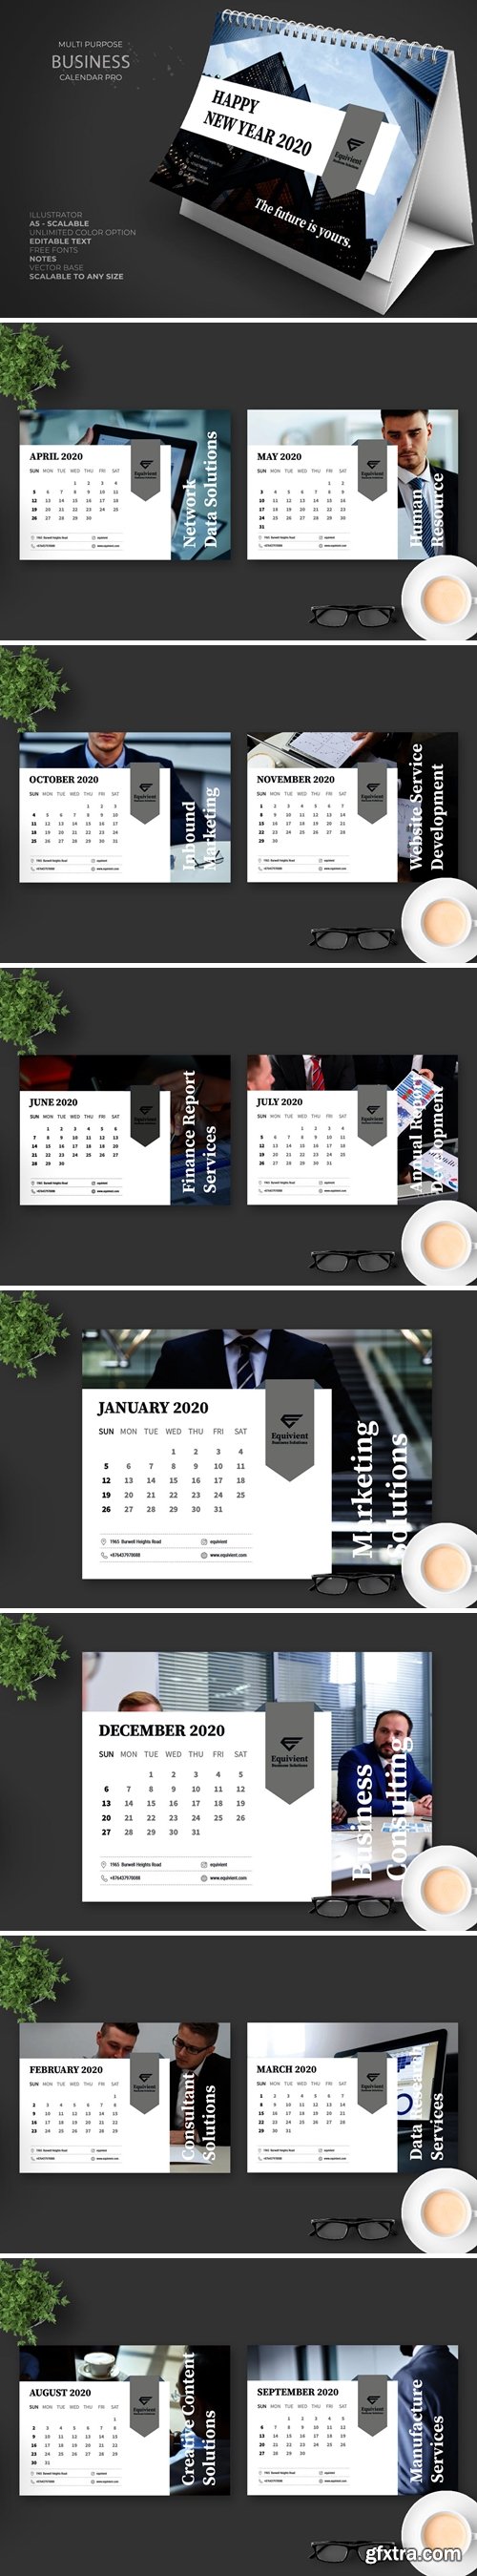 2020 Business Calendar Pro